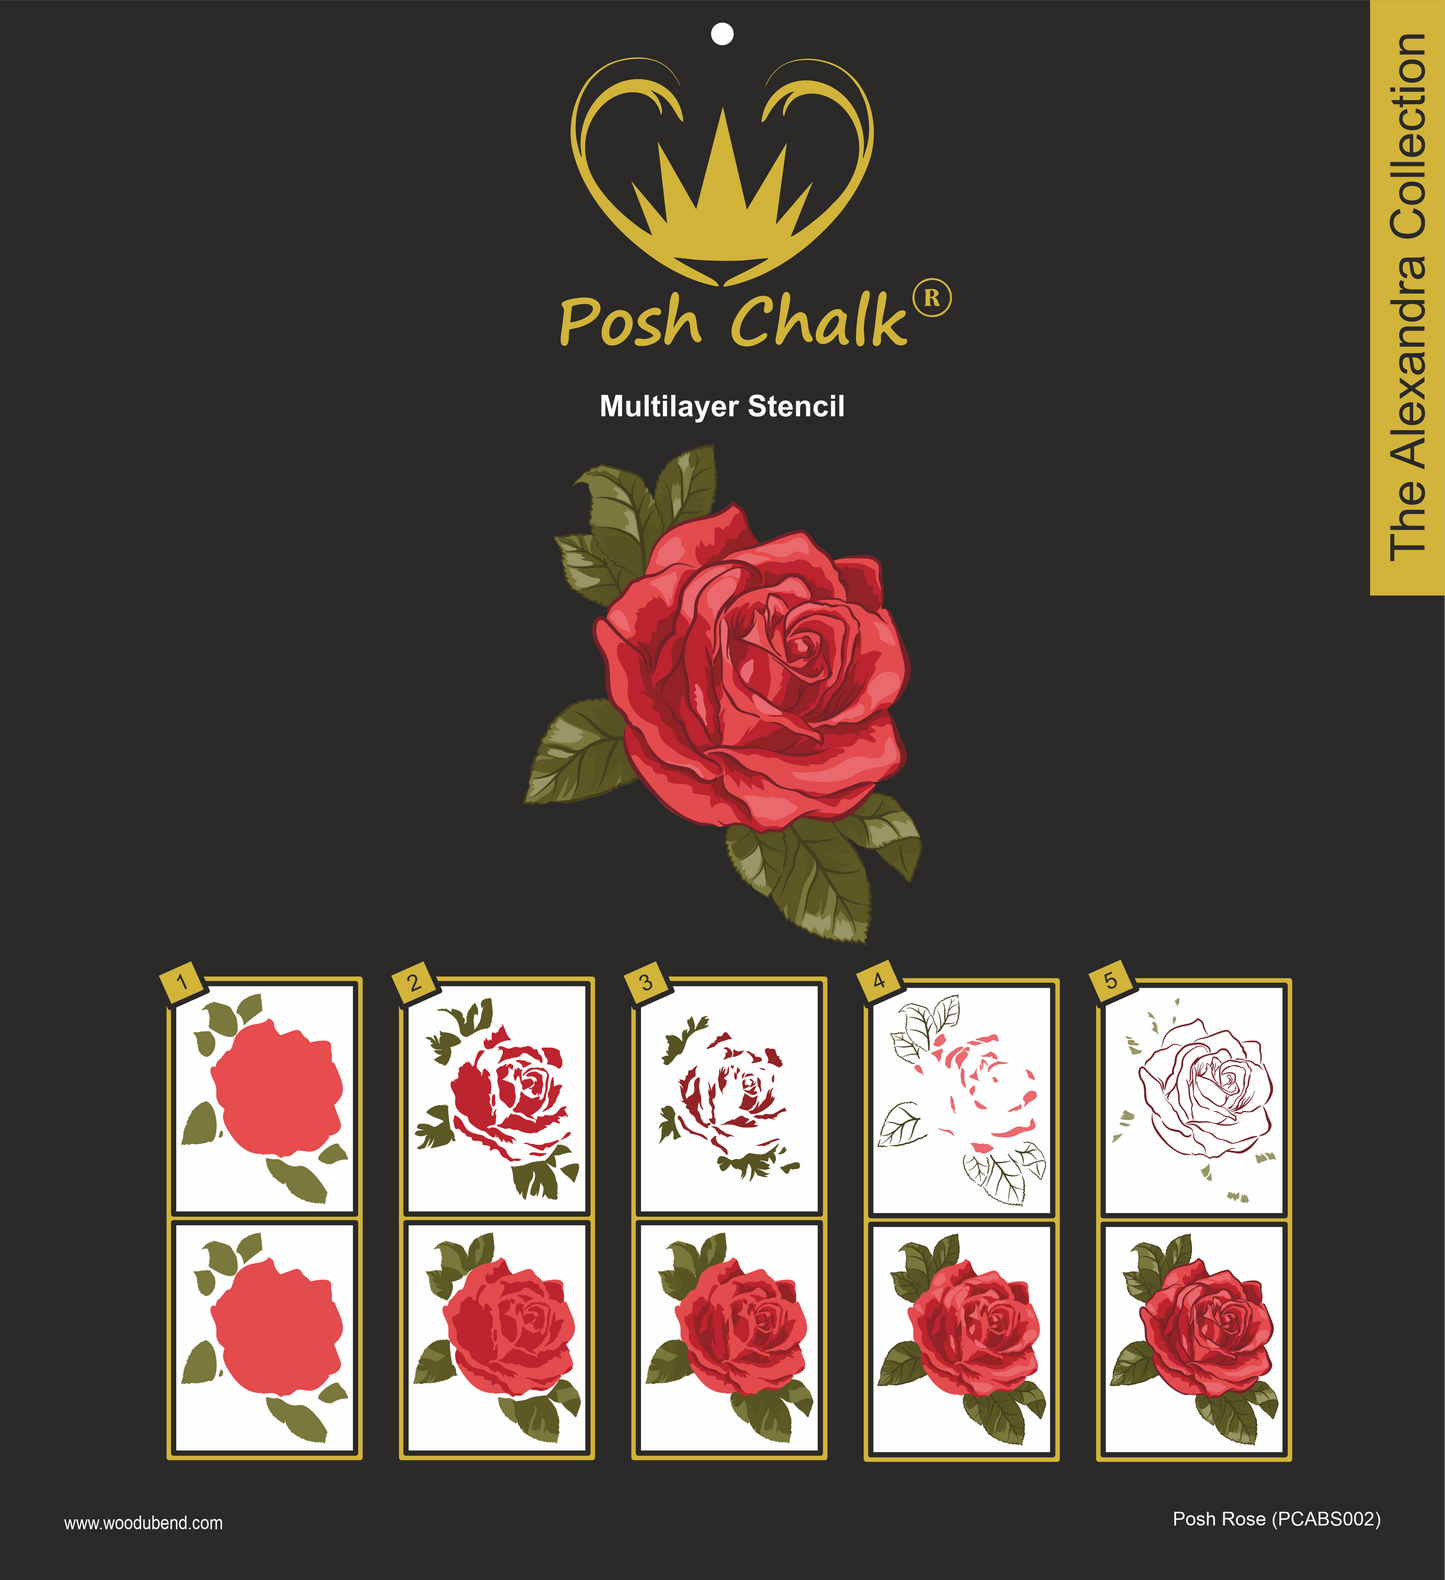 Posh Chalk Multilayer Stencil Posh Rose 9.52 x 12 inches